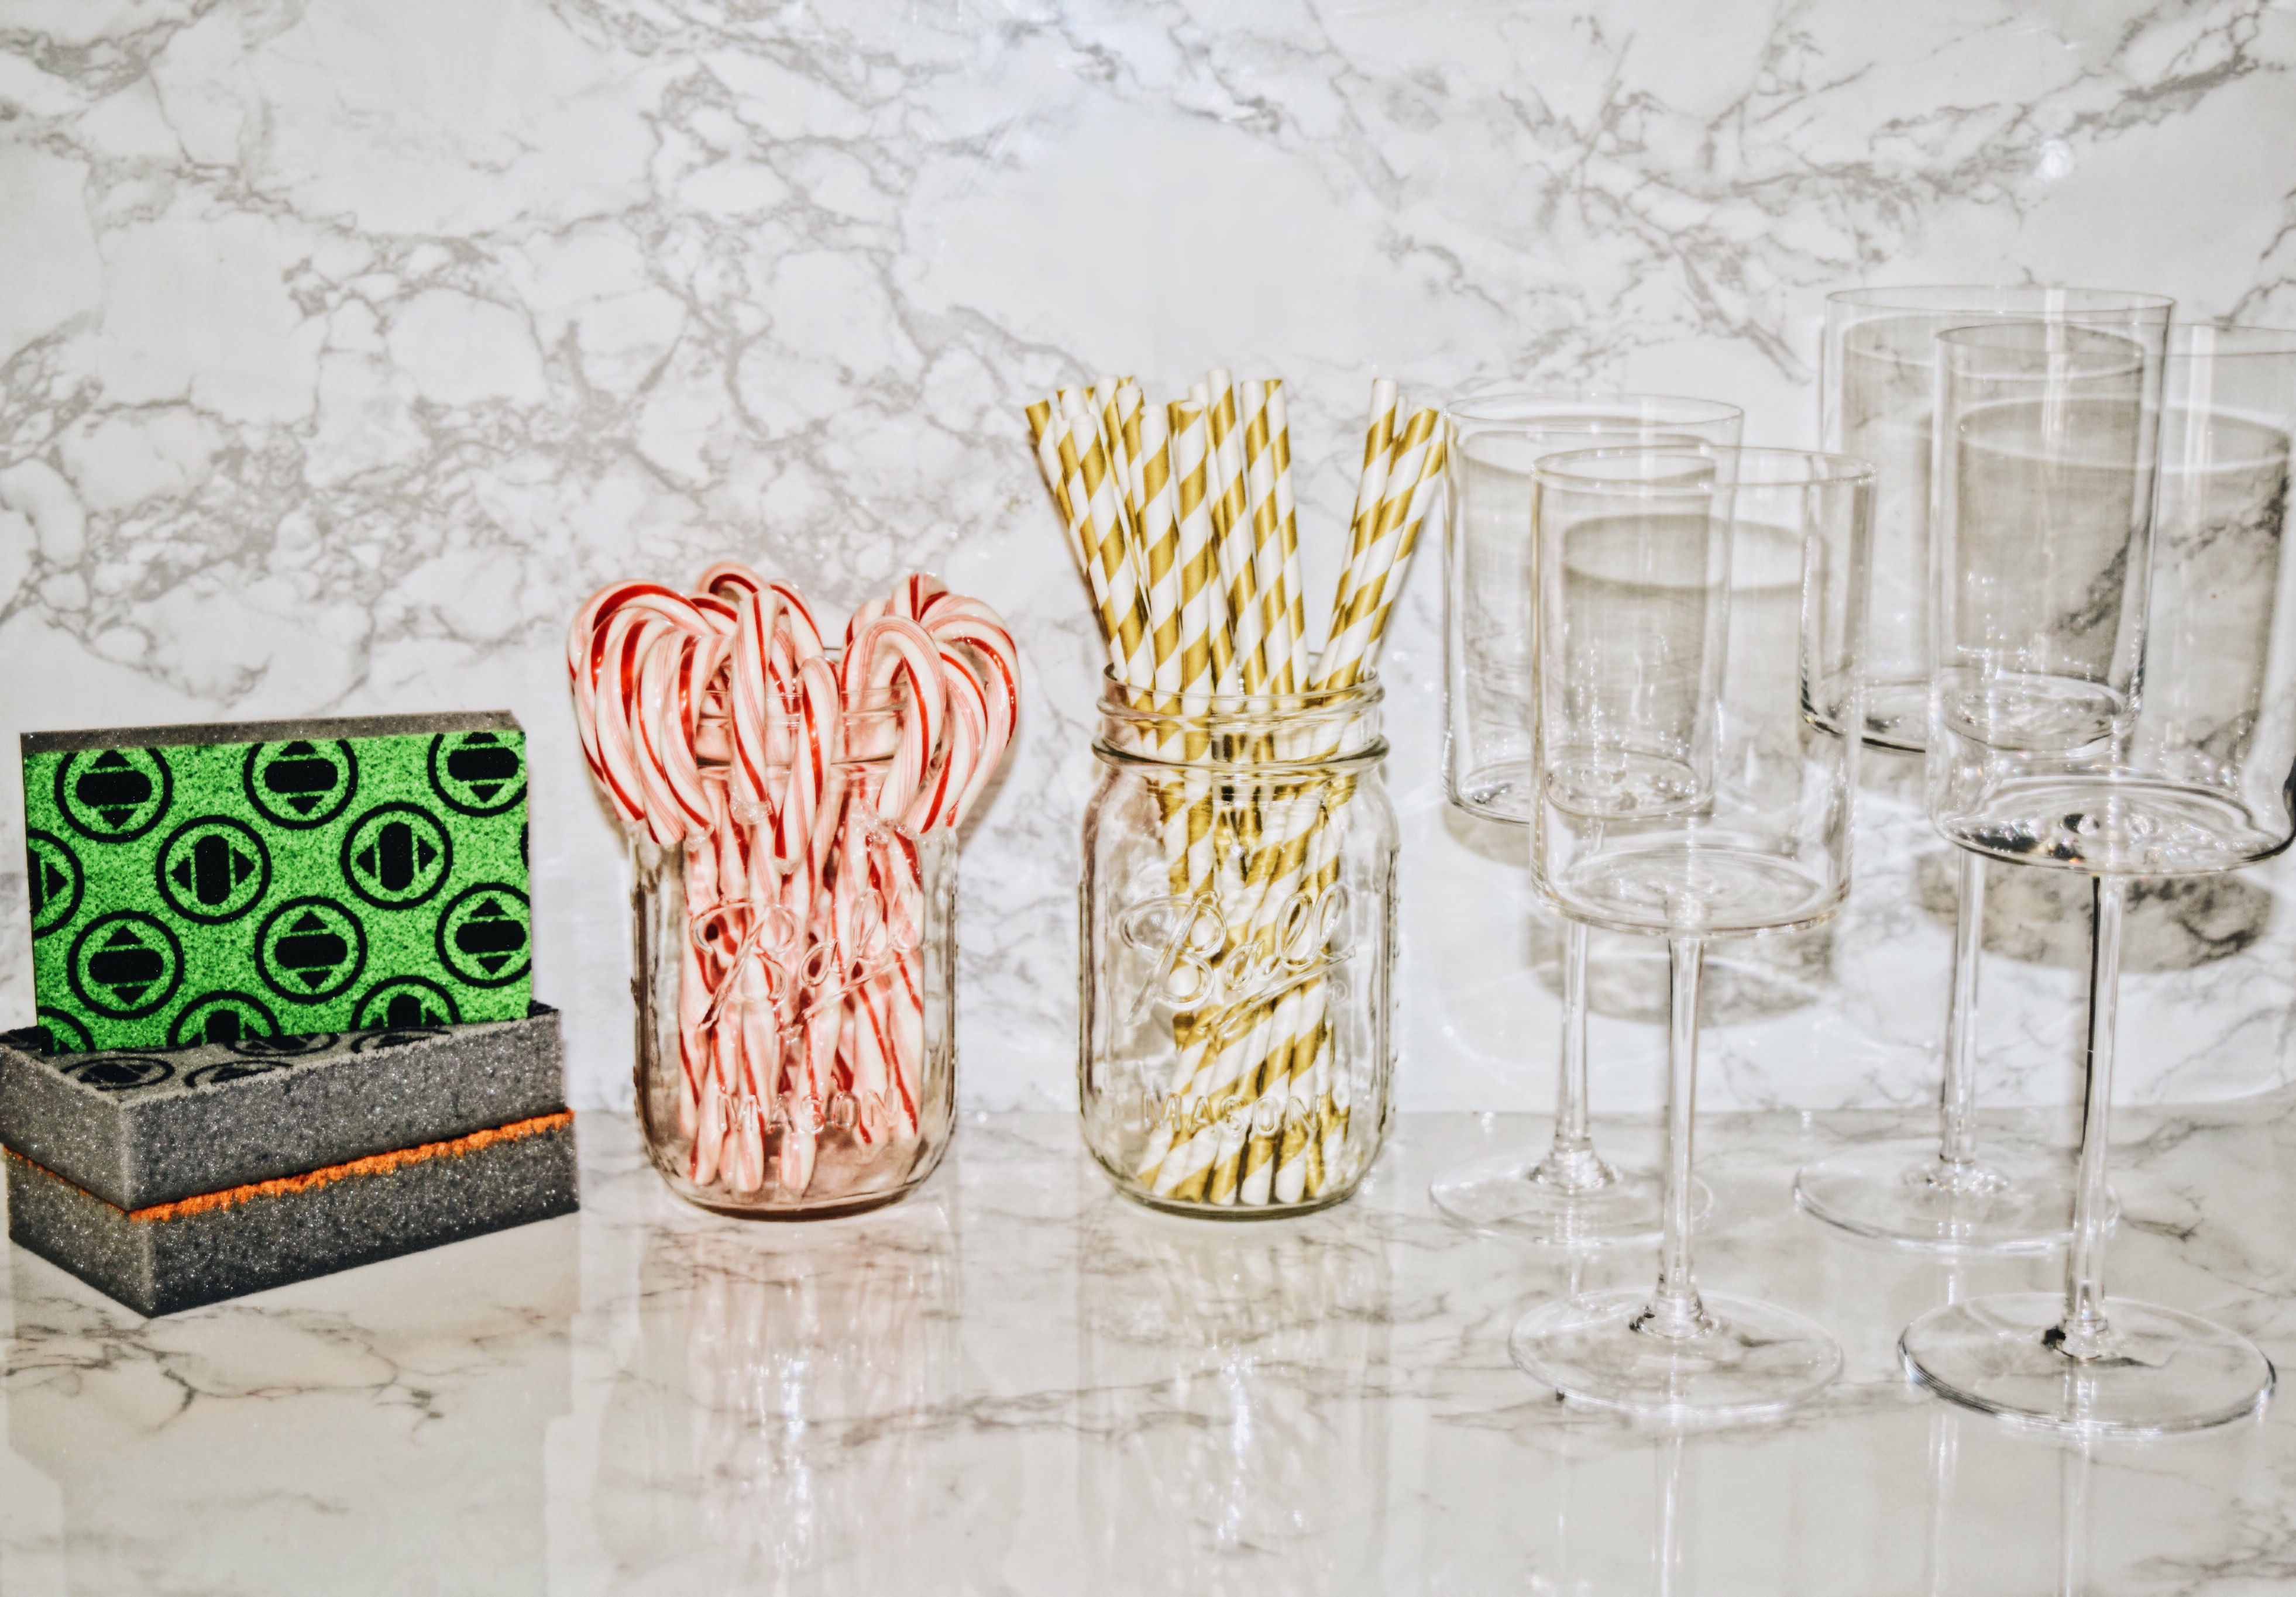 sakura style-sponges-lifestyle-kitchens-holiday gifts-sponge-new york